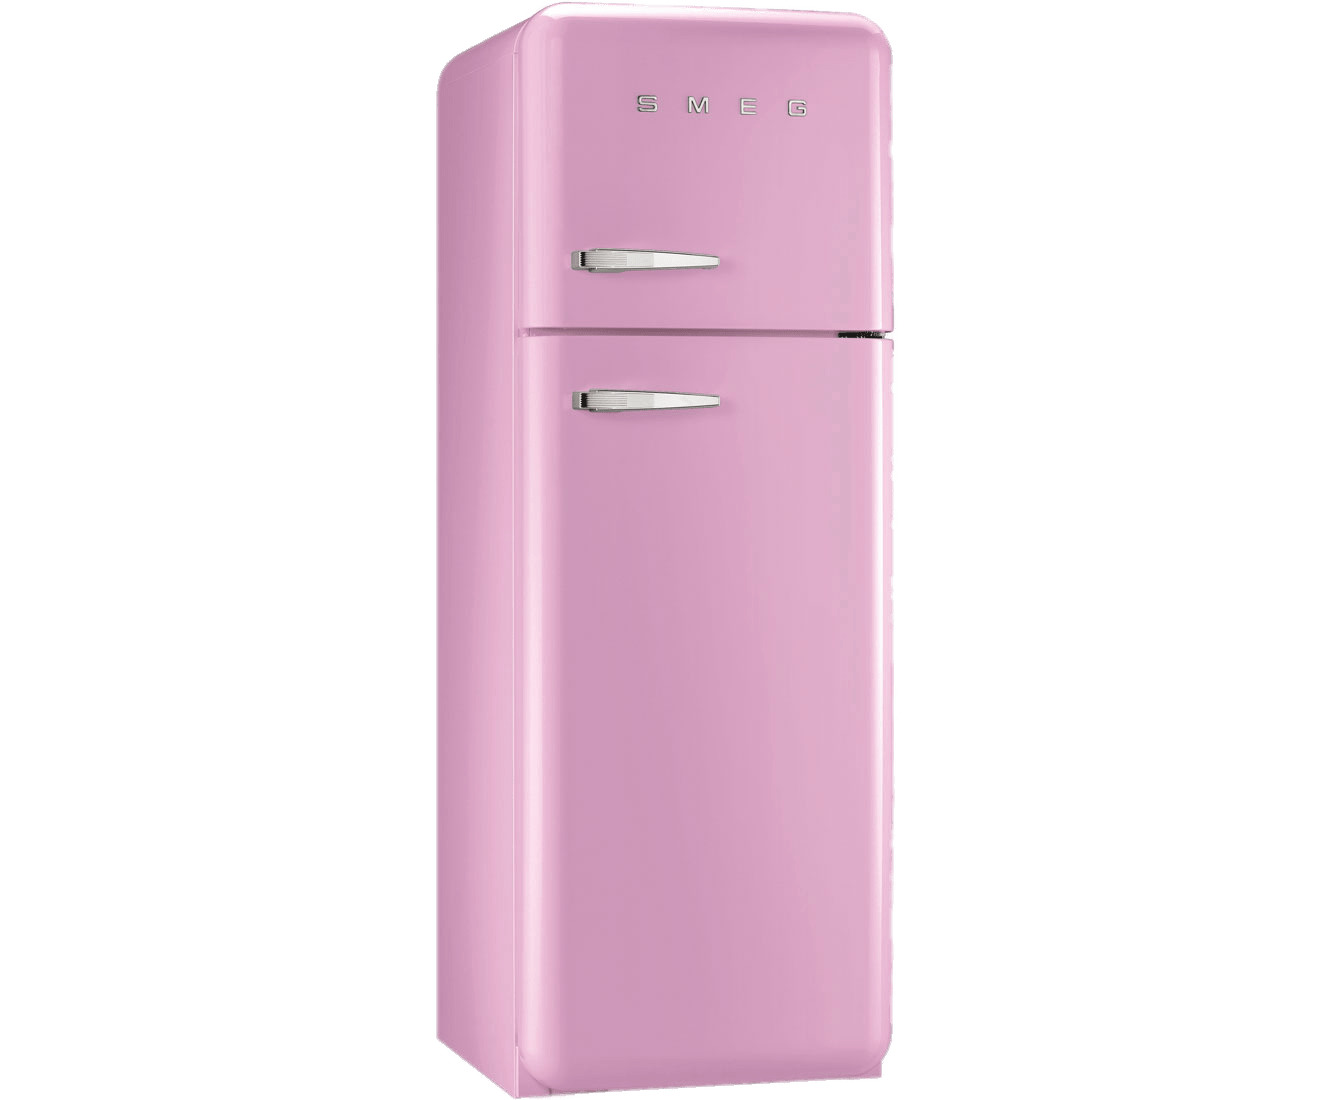 Smeg Pink Refrigerator icons